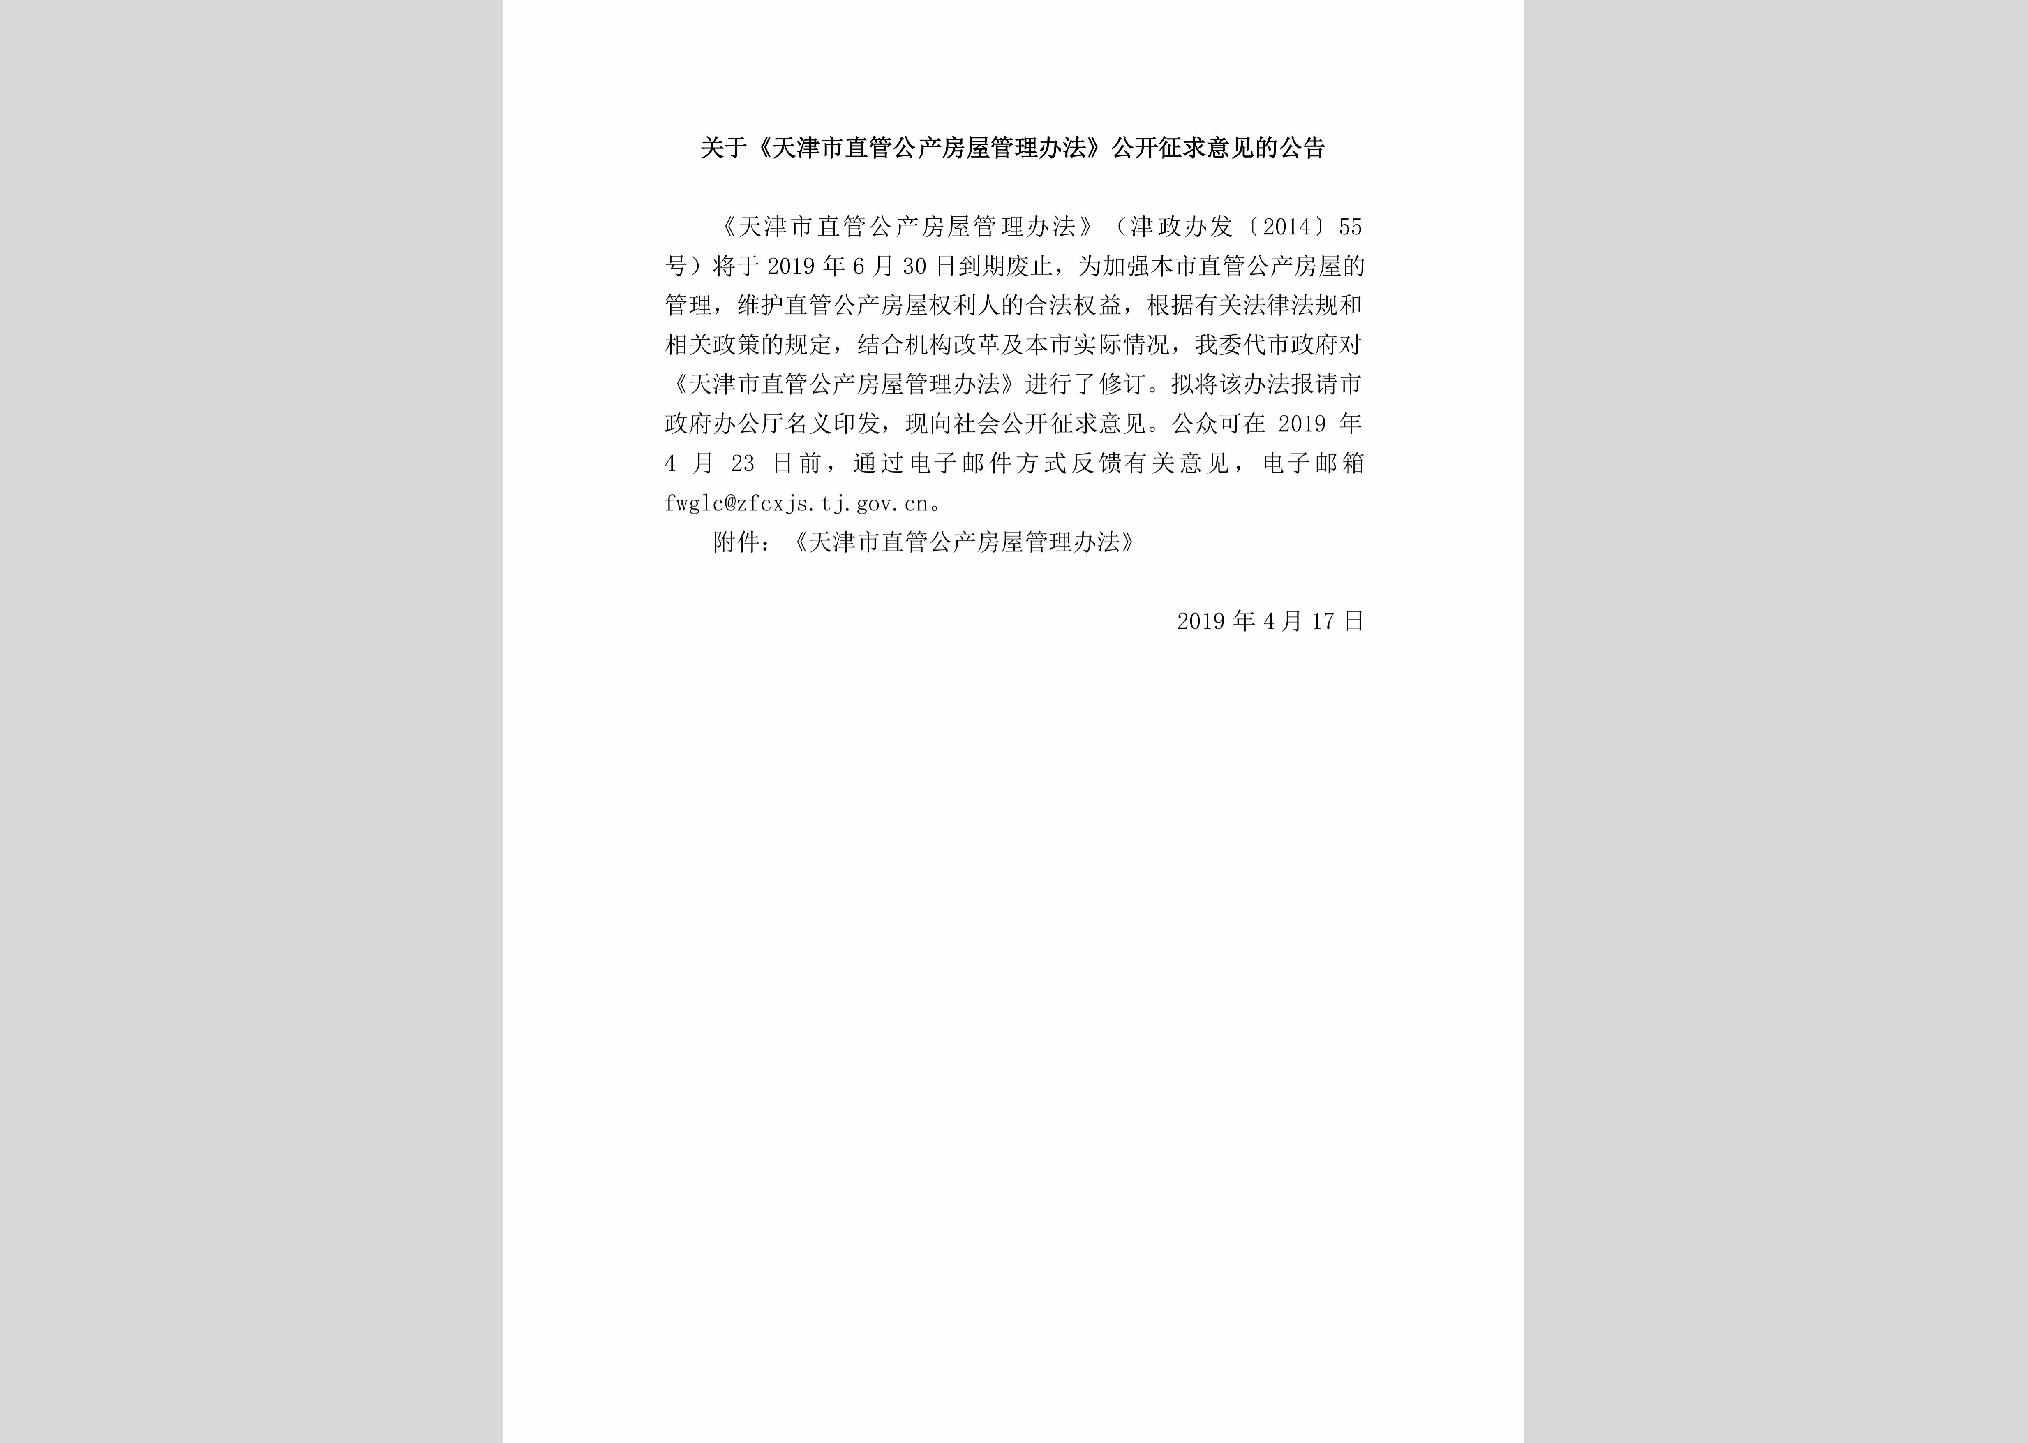 TJ-ZGGCFWGL-2019：关于《天津市直管公产房屋管理办法》公开征求意见的公告